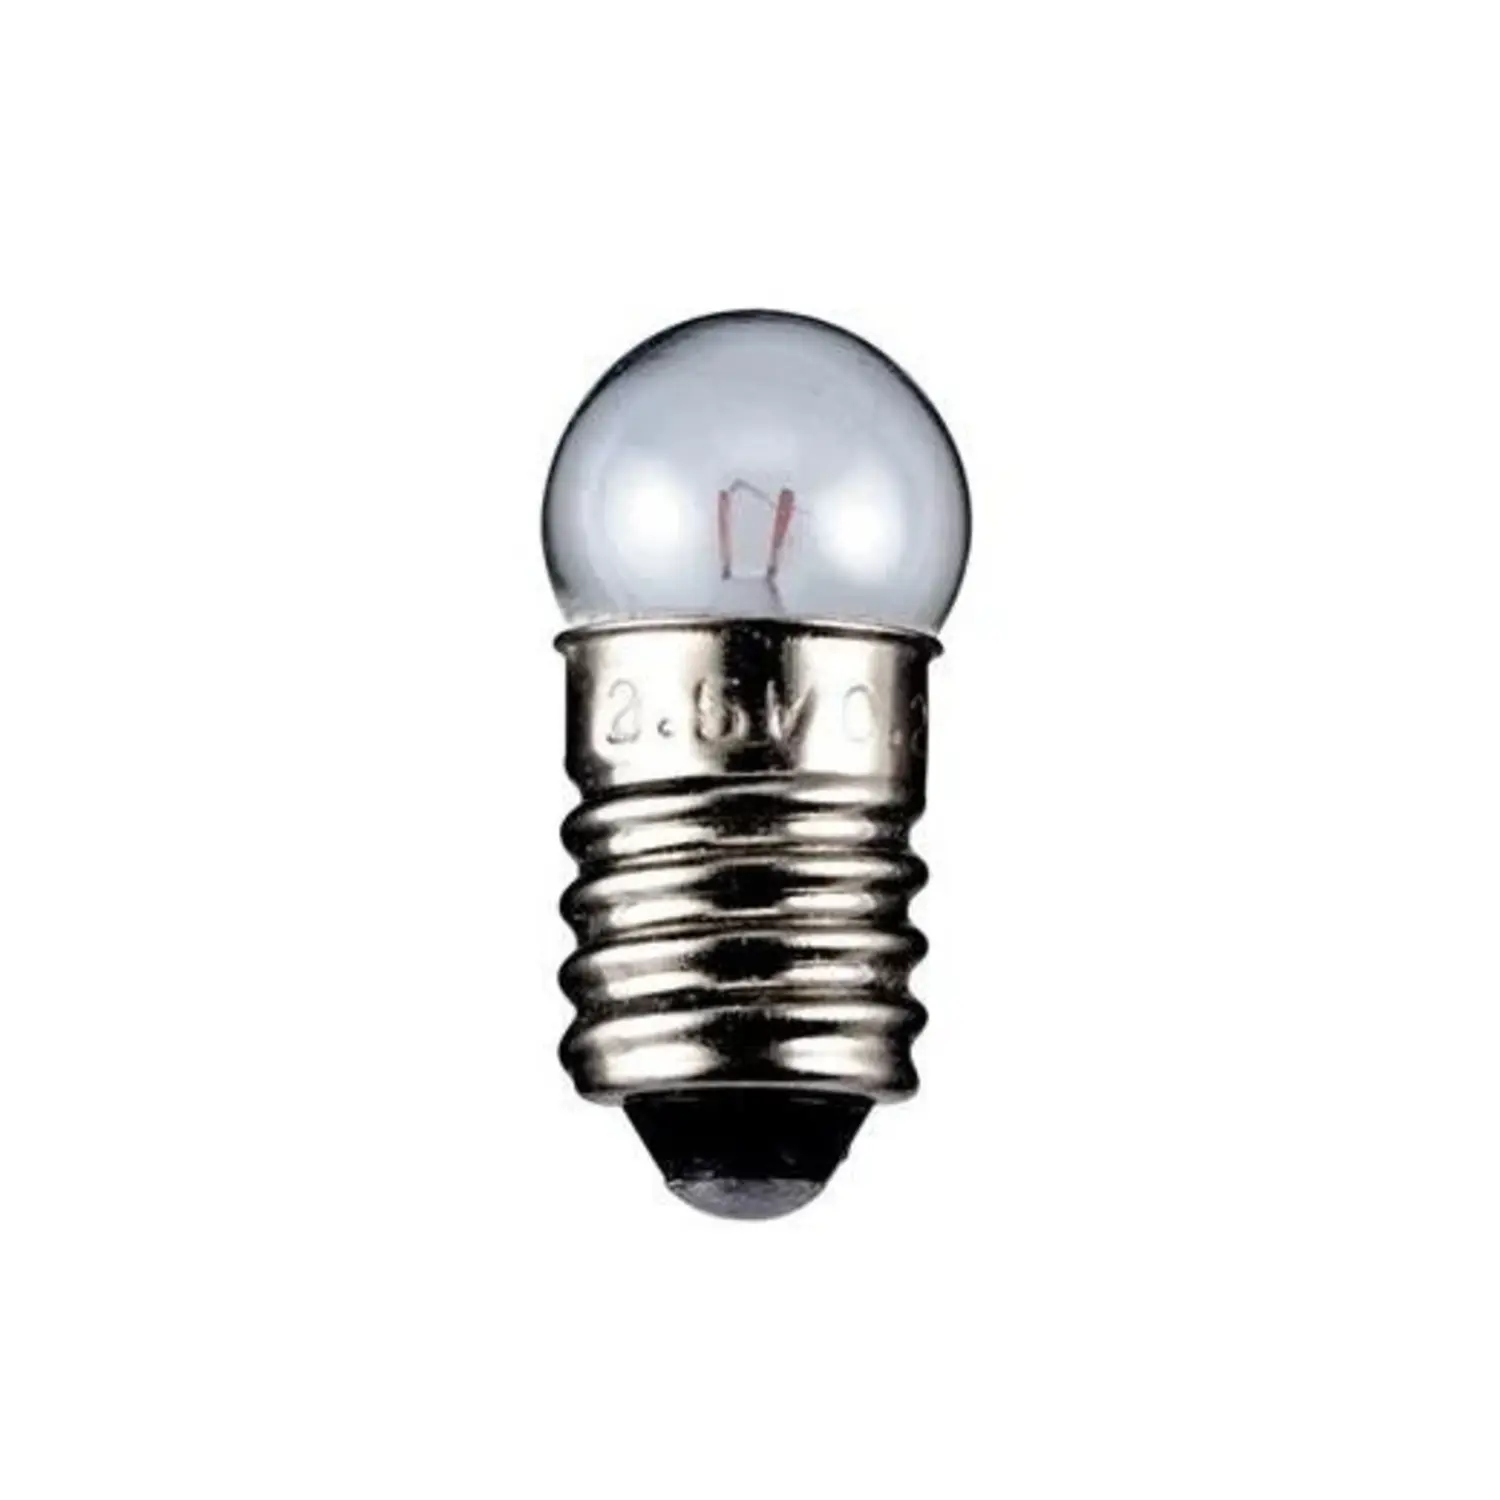 immagine del prodotto lampadina globulare chiara 12 volt trasparente E10 CE 1,20 watt wnt 9592